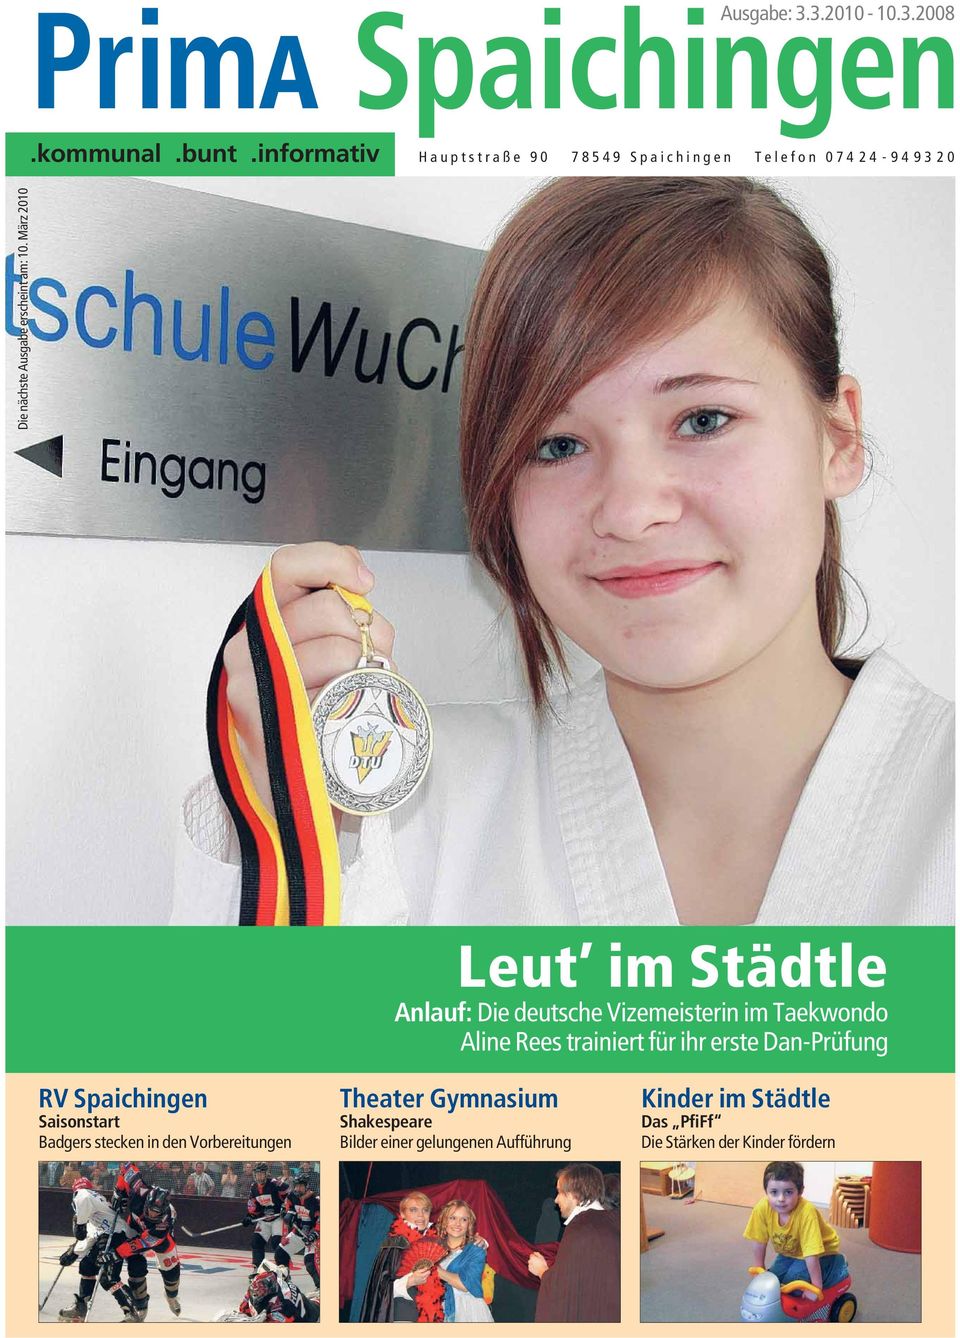 März 2010 Leut im Städtle Anlauf: Die deutsche Vizemeisterin im Taekwondo Aline Rees trainiert für ihr erste